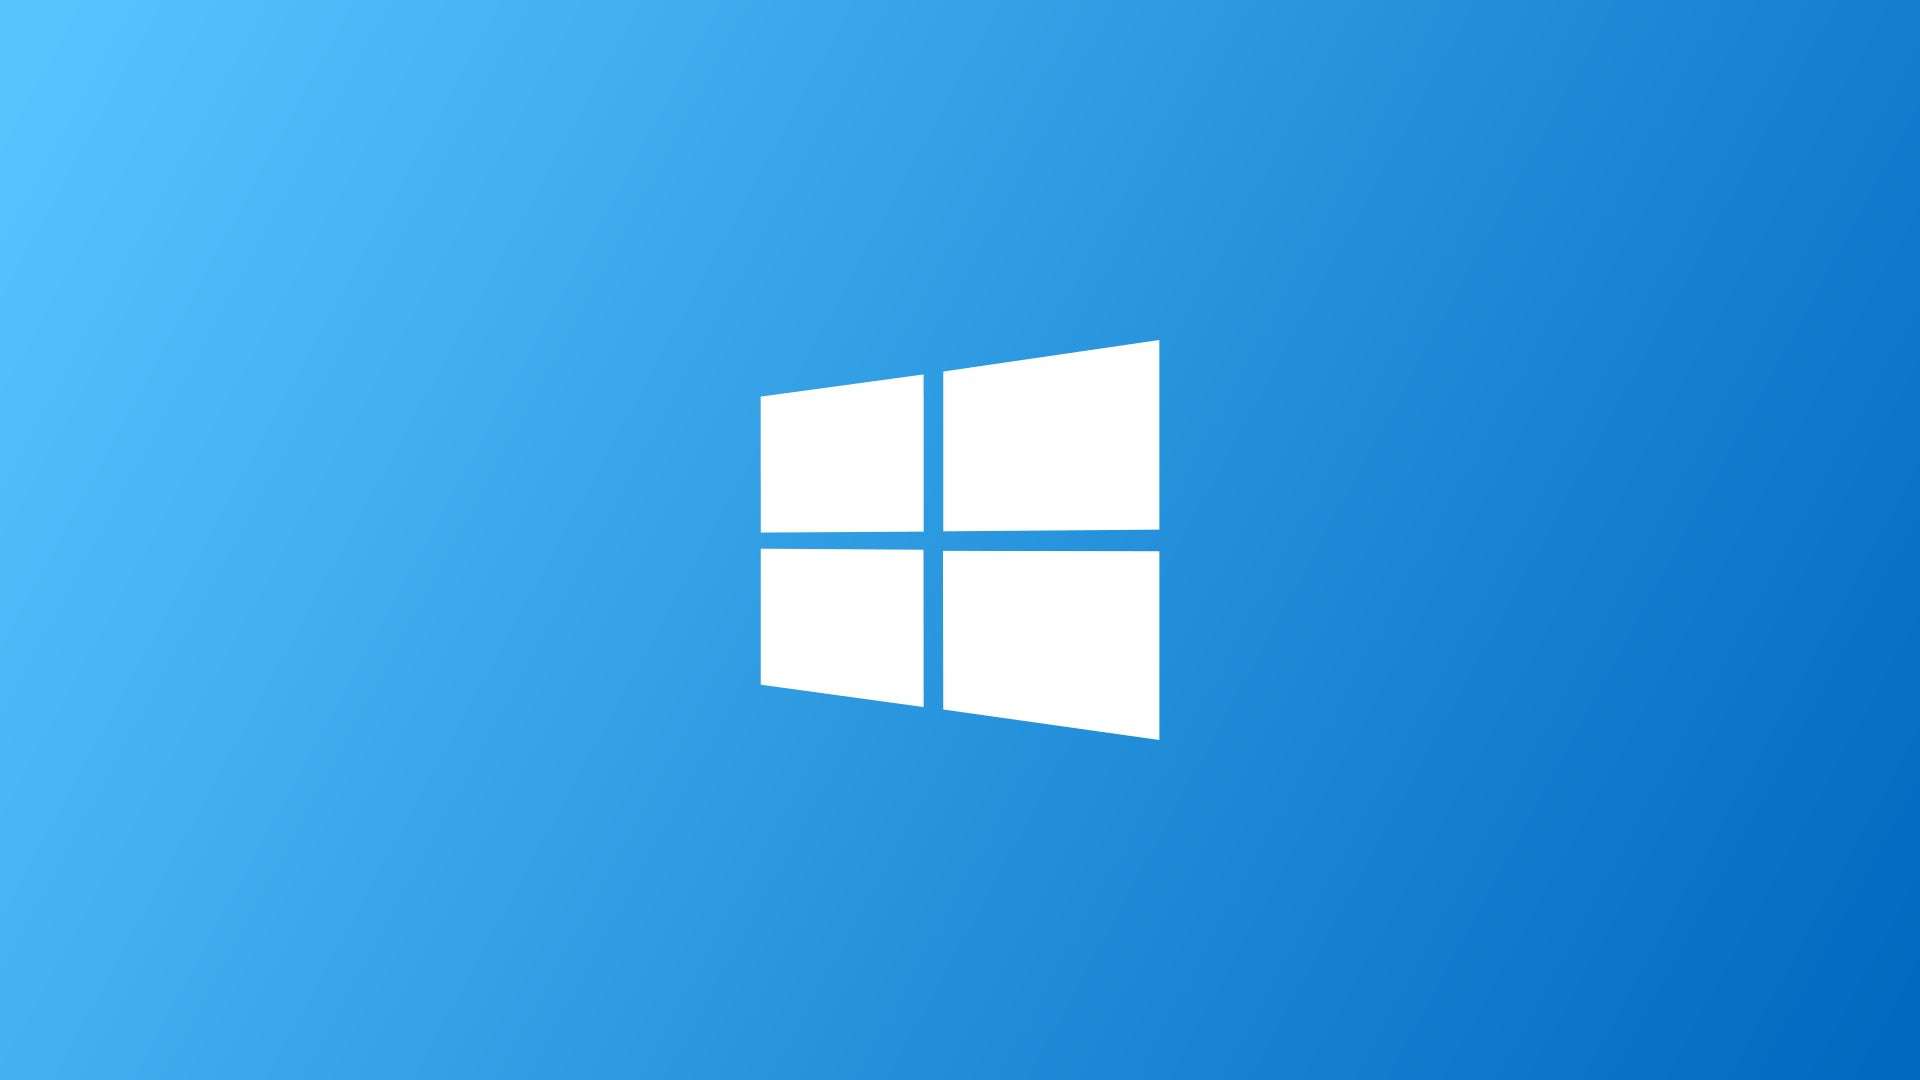 微软表示Windows 10下个月起将减少更新 发布新系统